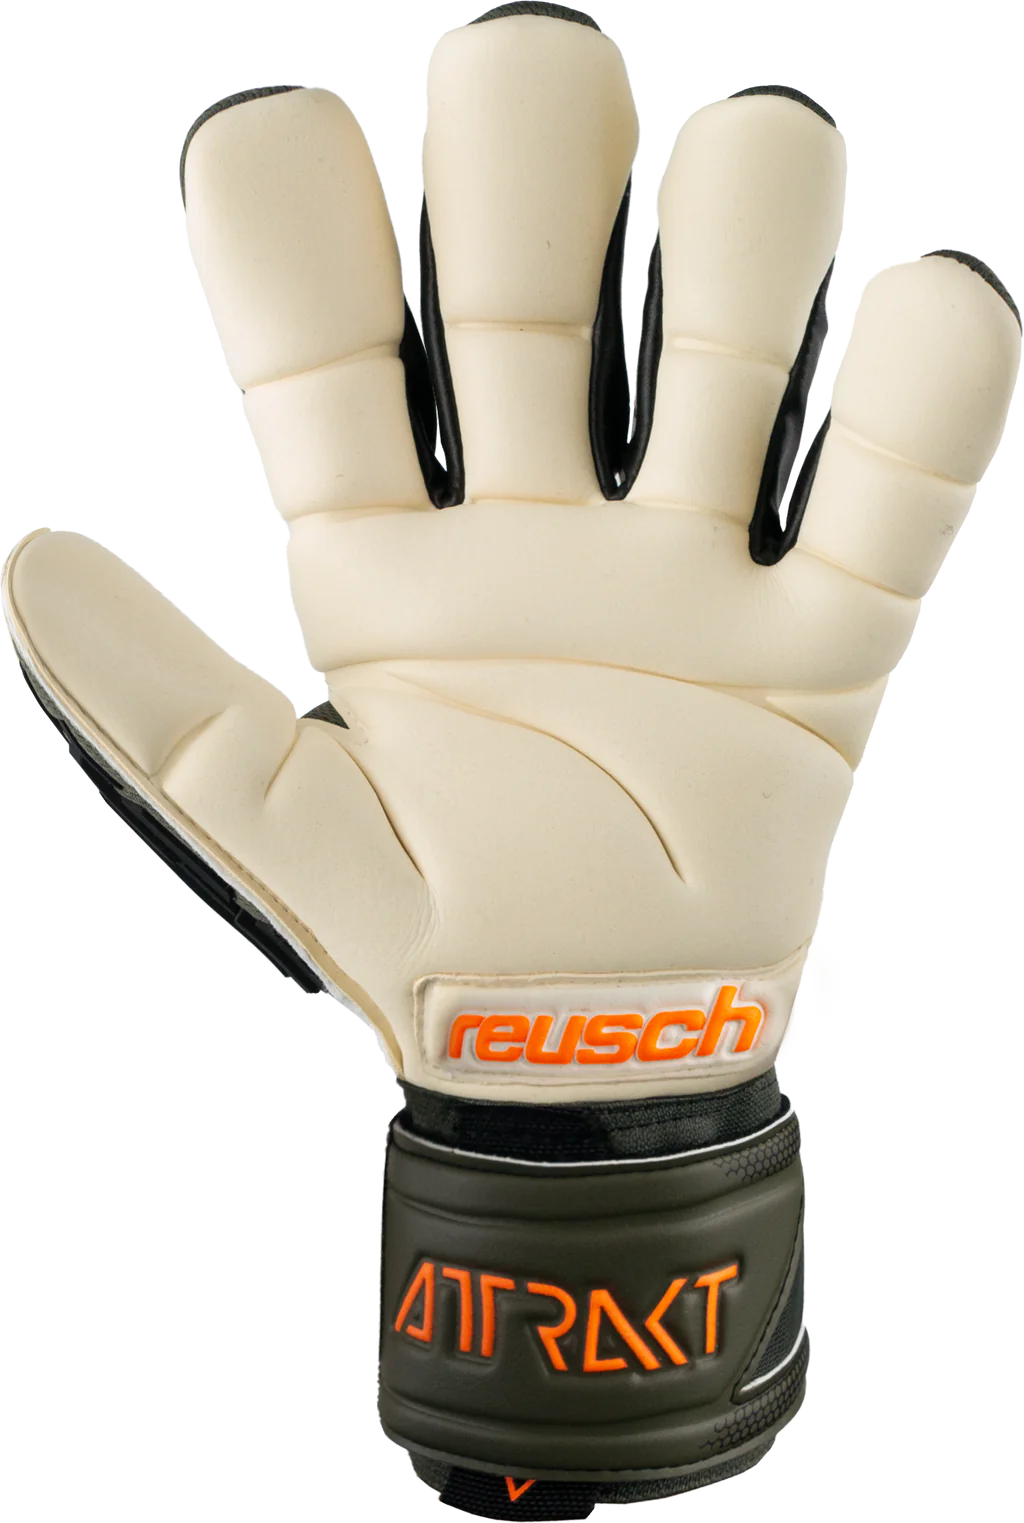 Reusch Attrakt Freegel Gold X Finger Support Goalkeeper Gloves-Desert Green/Shock Orng